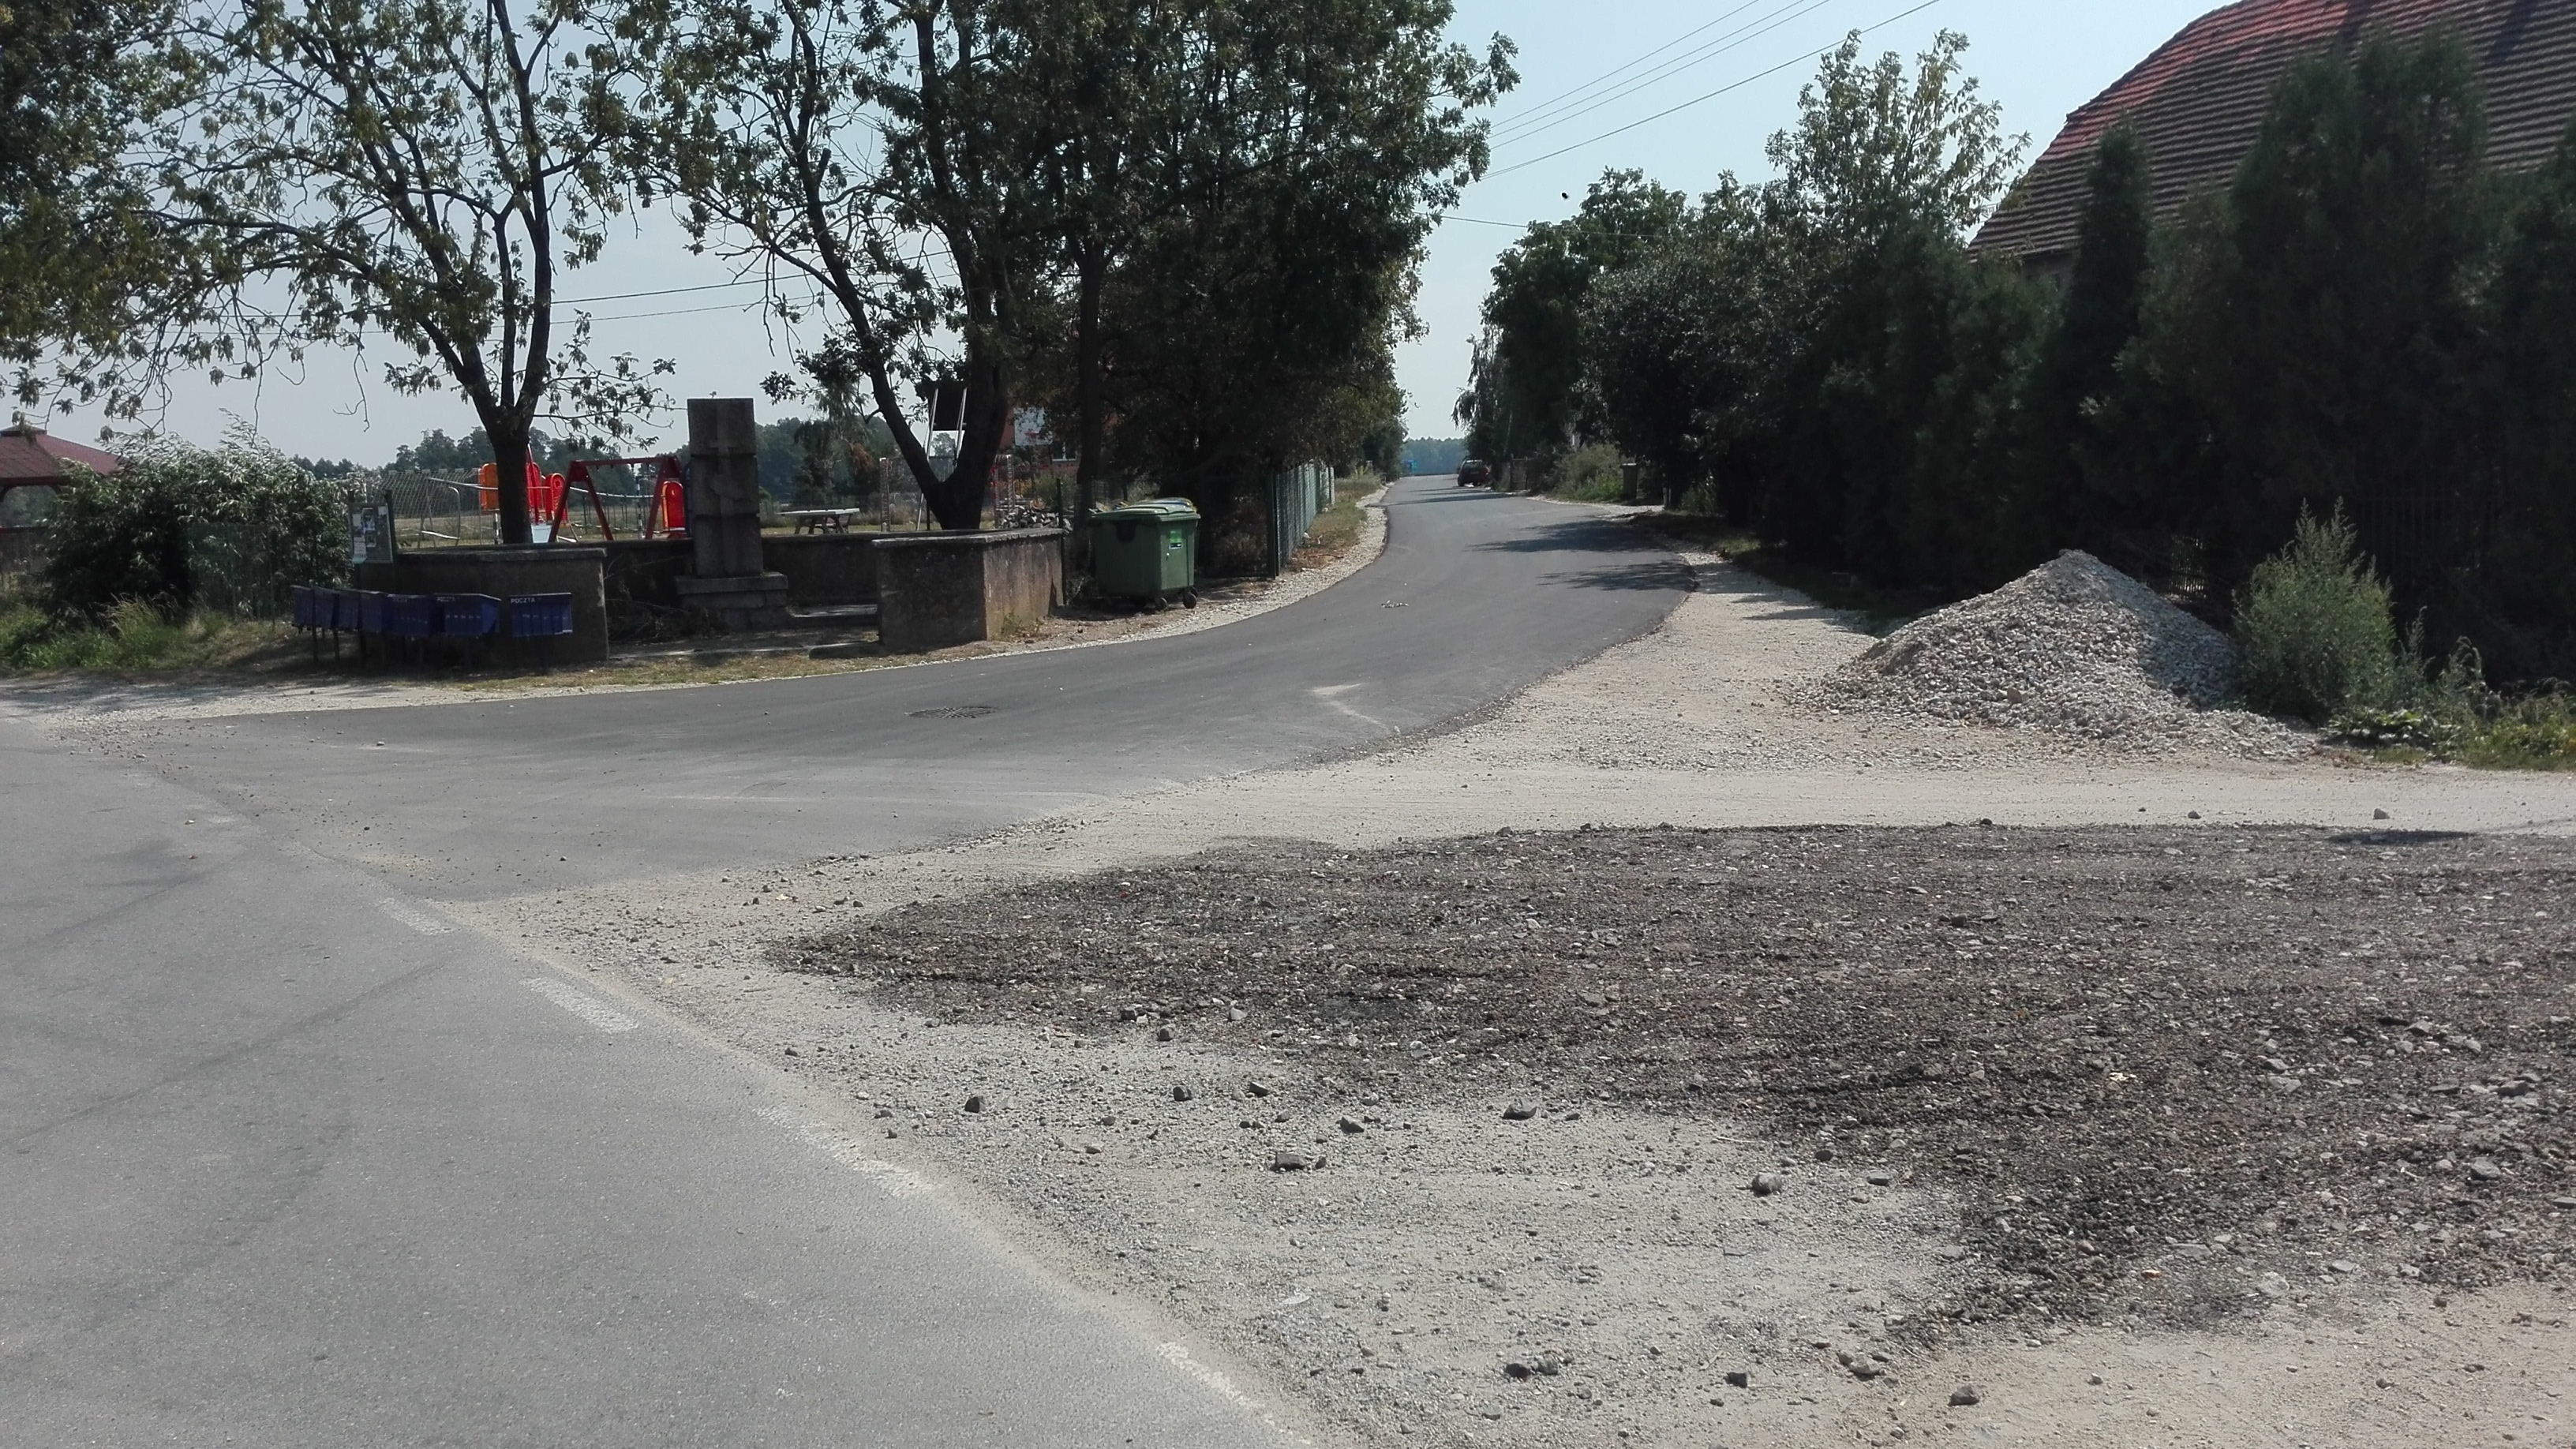 zdjęcie przedstawia nową nakładkę asfaltową